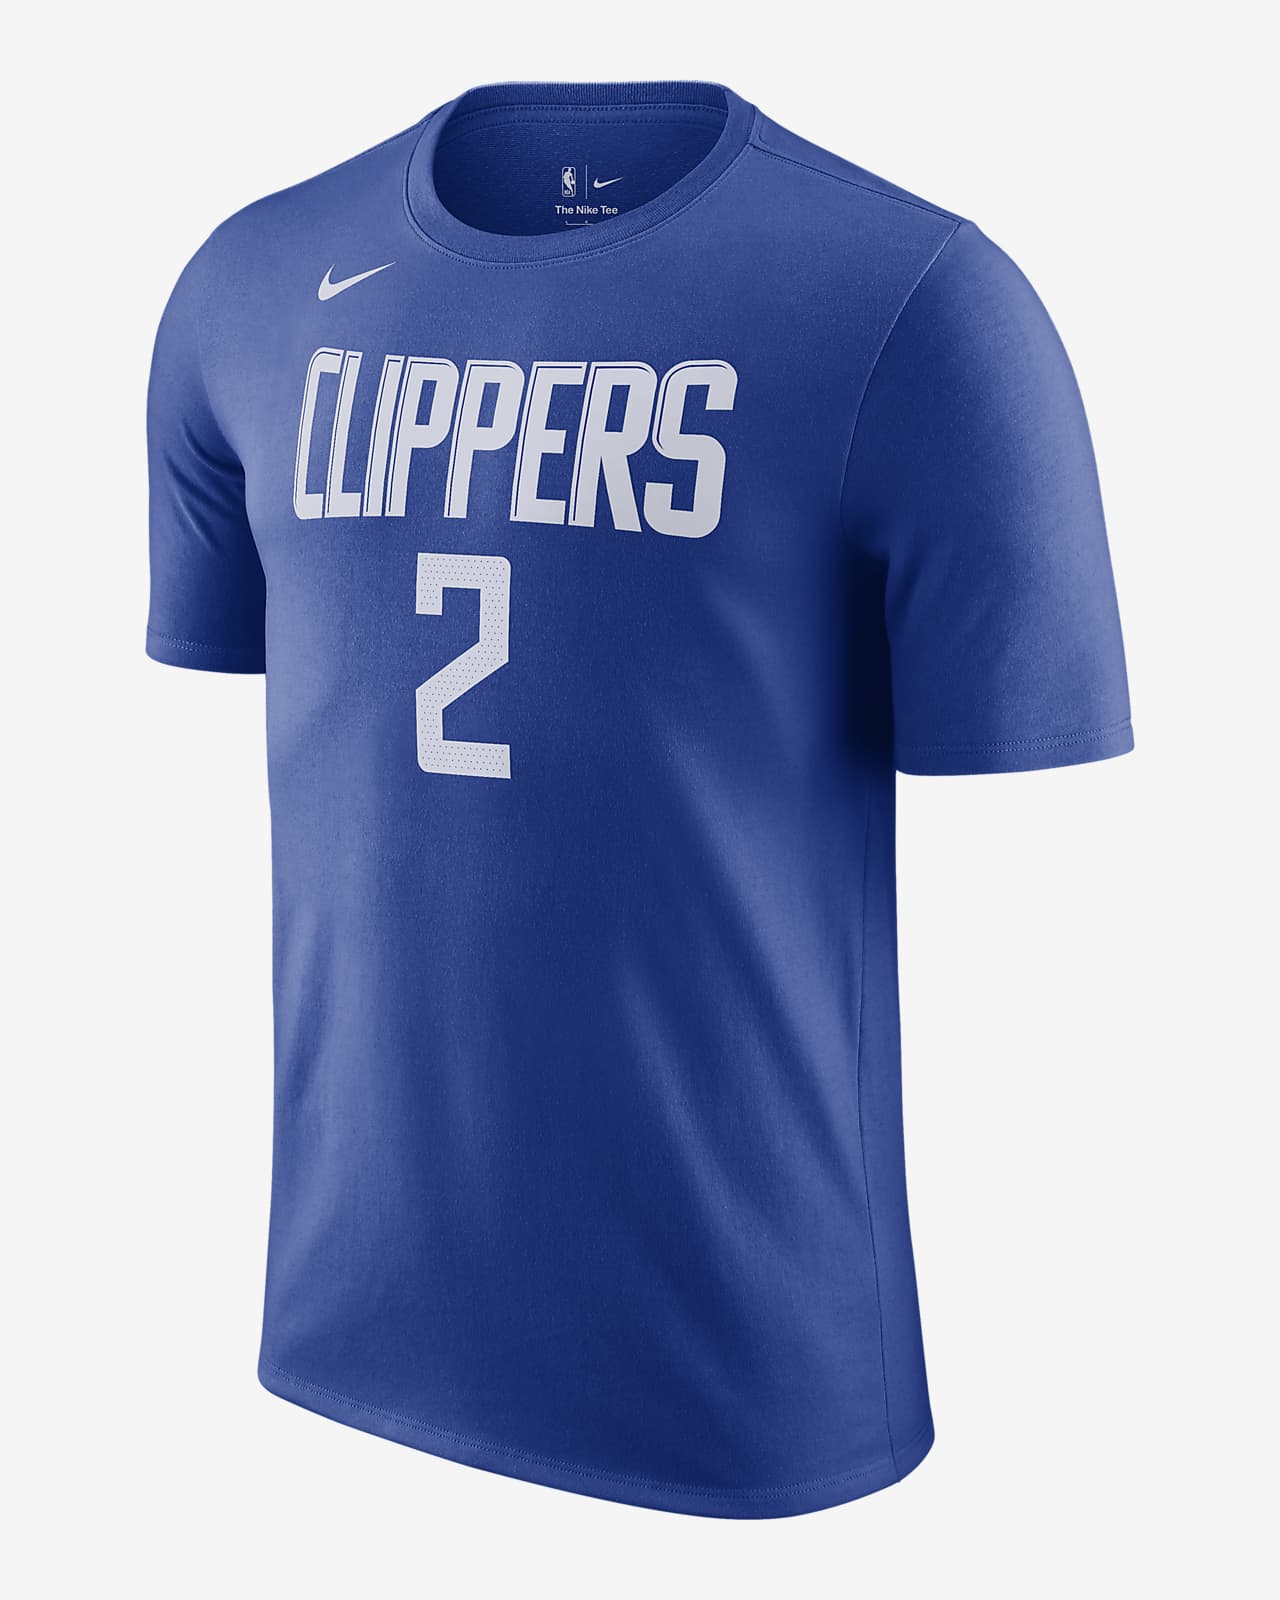 Playera Nike NBA para hombre LA Clippers